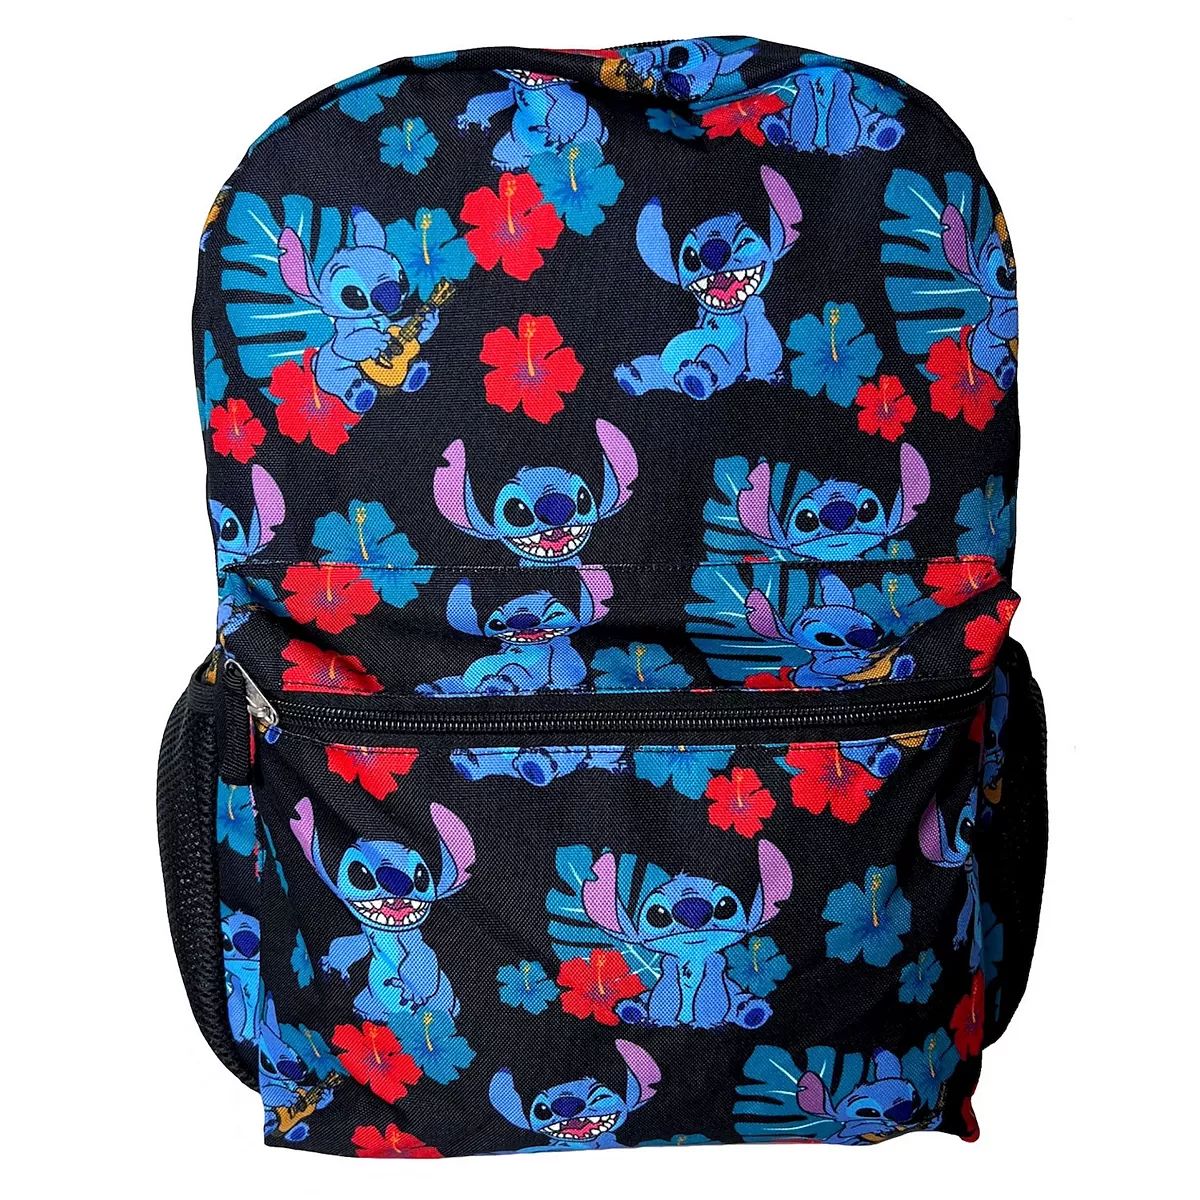 Disney's Lilo & Stitch Backpack | Kohl's